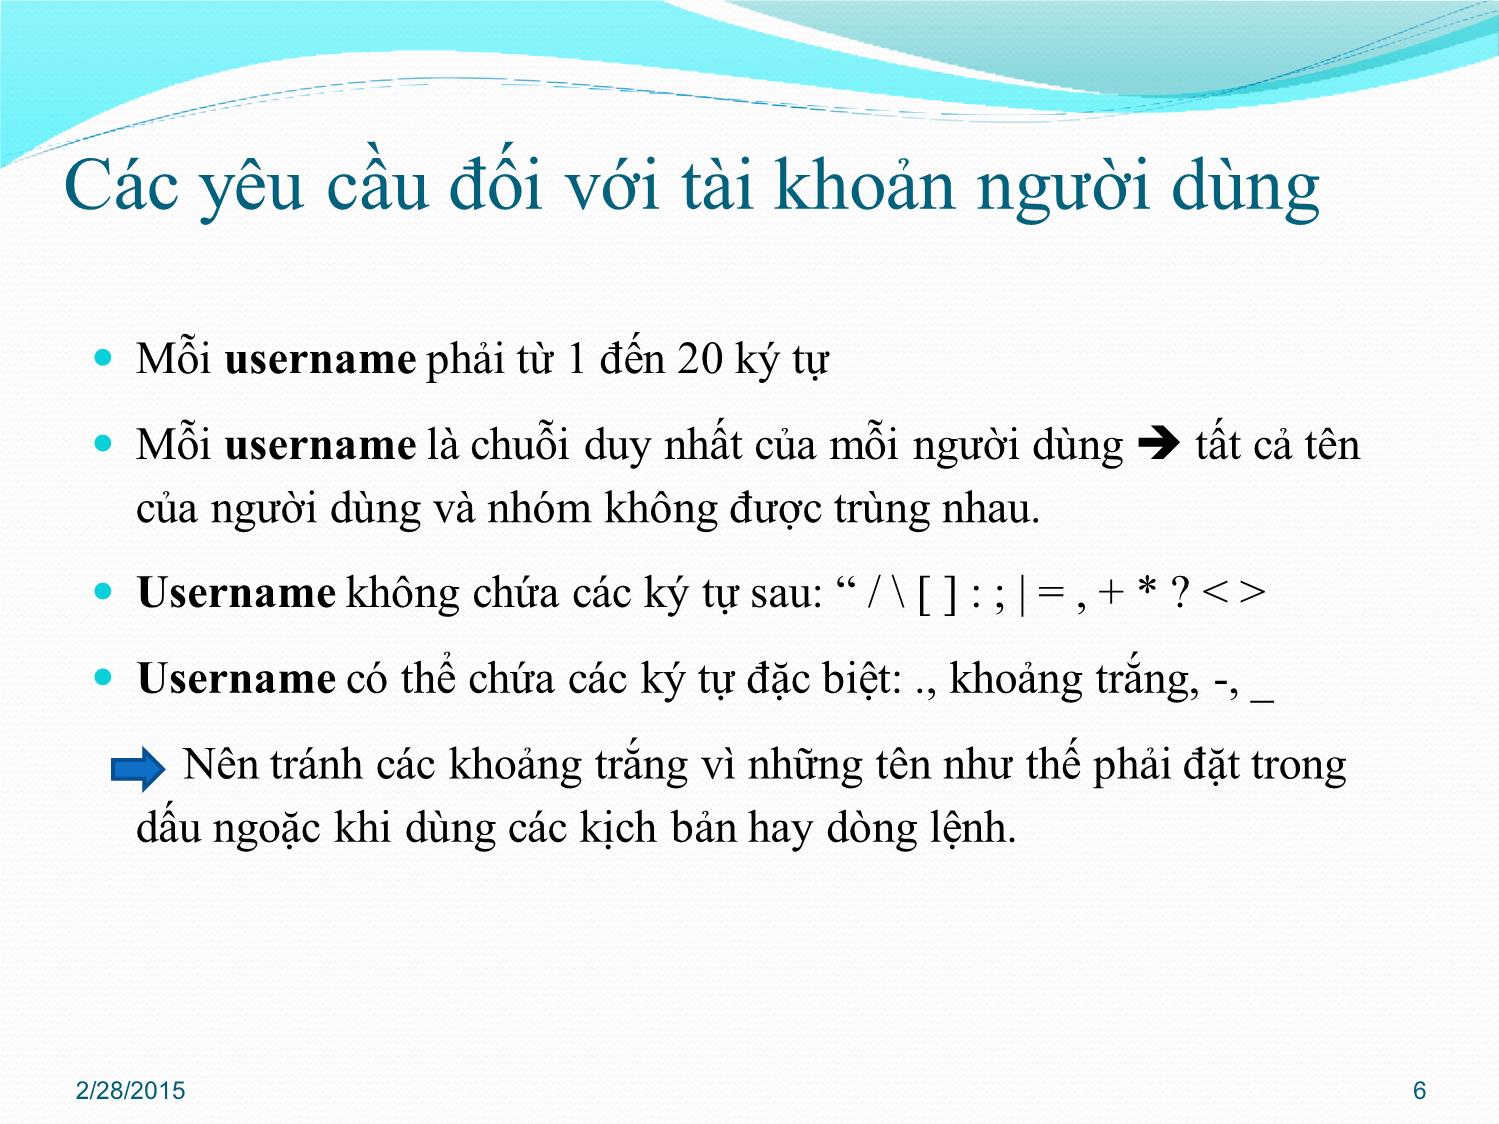 Bài giảng Quản trị mạng - Chương 3: Quản trị Active Directory - Phan Thị Thu Hồng trang 6